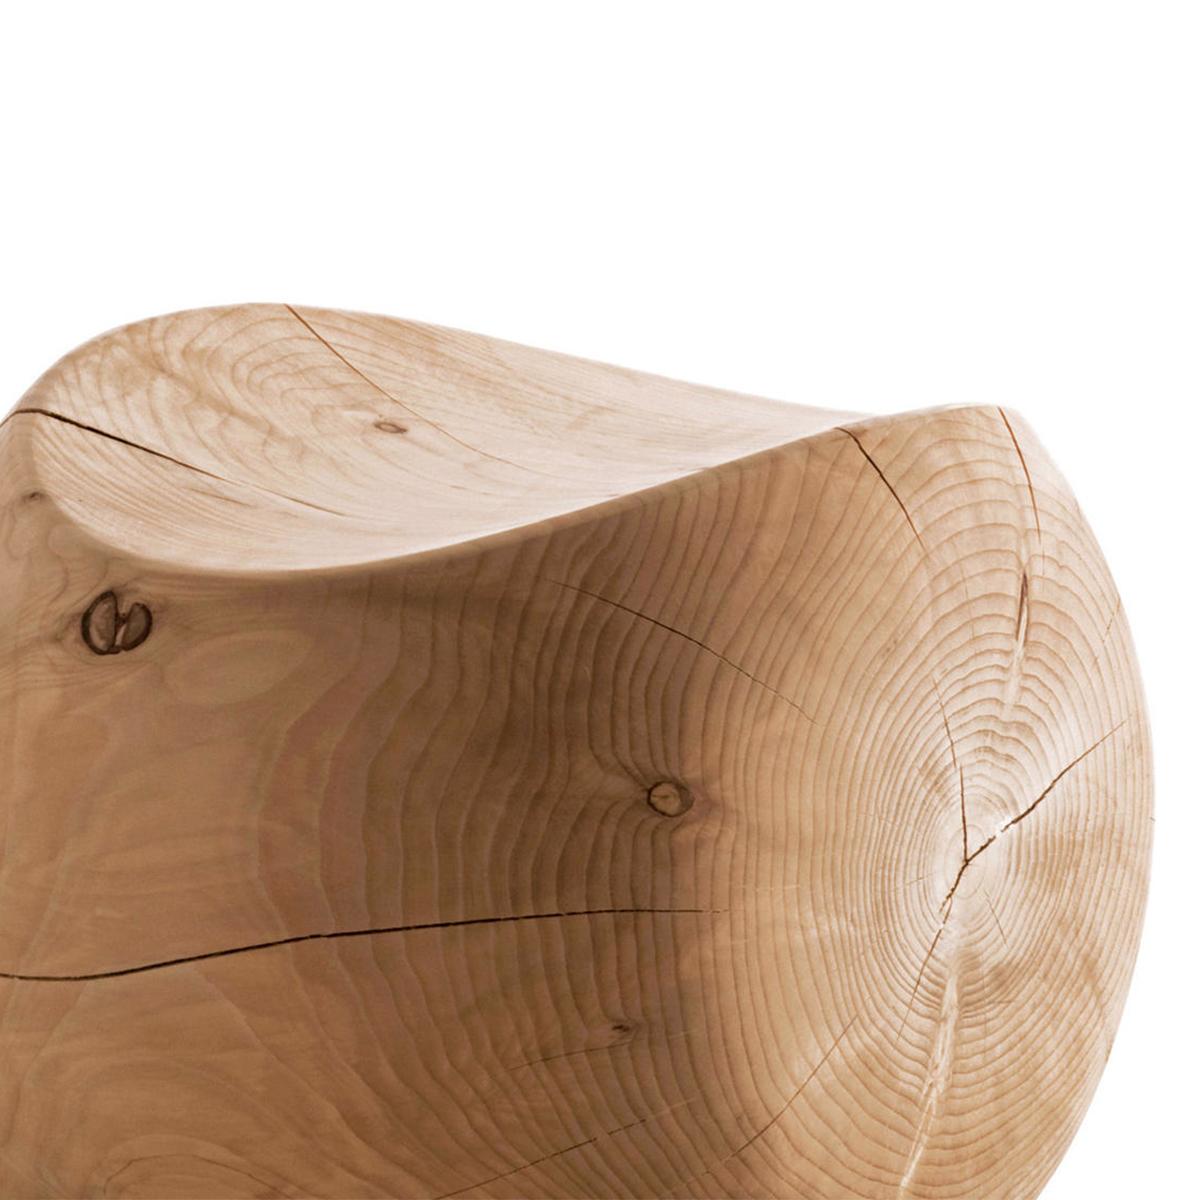 Hocker Cocoona Form 1 in massivem natürlichen aromatischen
zedernholz. Hergestellt in einem Block aus Zedernholz.
Behandelt mit natürlichen Pinienextrakten.
Kann für die 3 Seiten des Hockers verwendet werden.
Massive Zedernholz enthalten Bewegung,